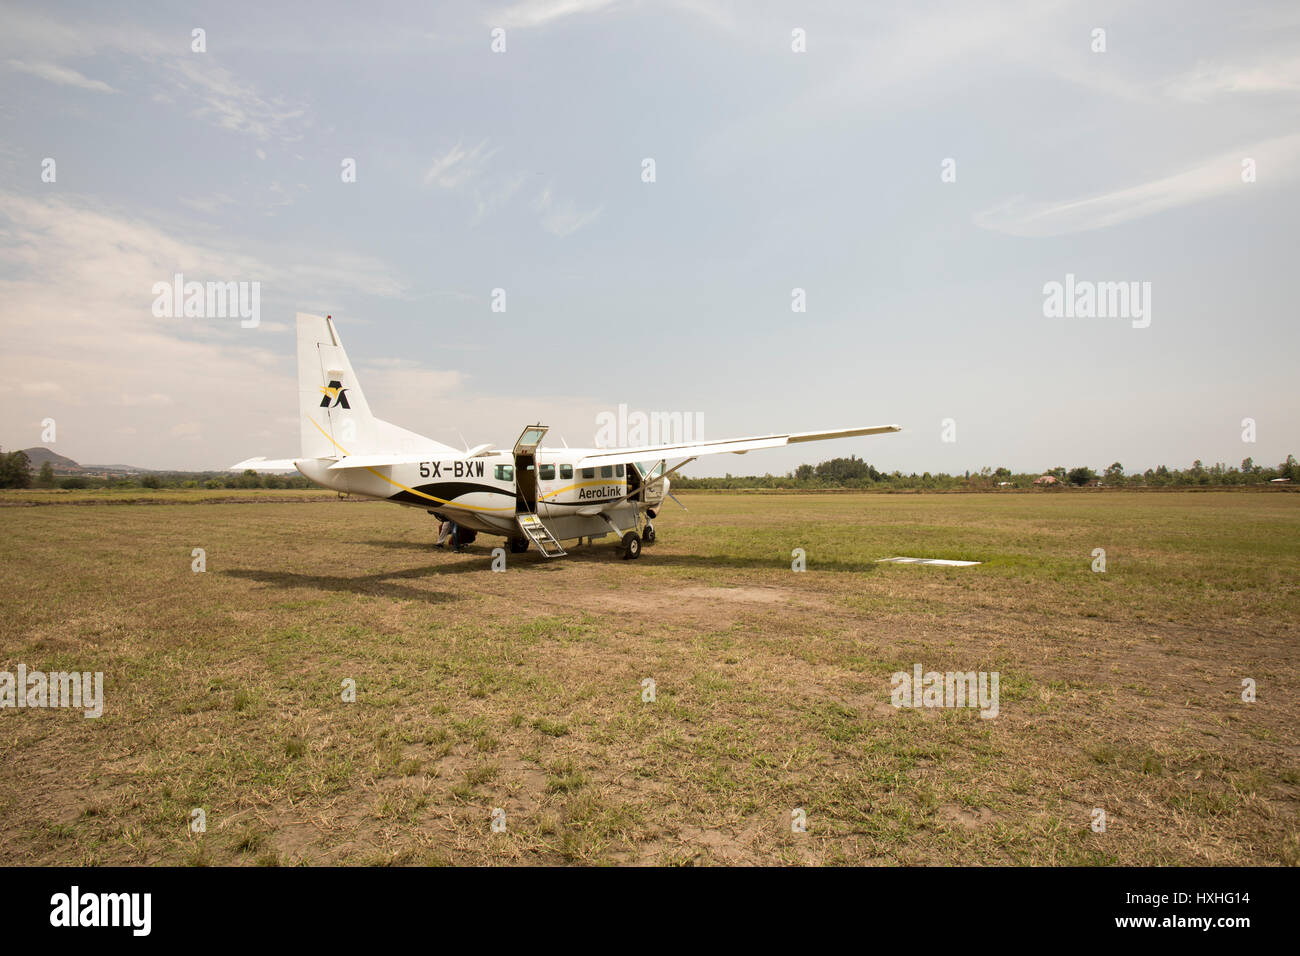 Kesese, Uganda - February 22, 2017 : AeroLink plane on dirt runway of Kesese, Uganda. Stock Photo